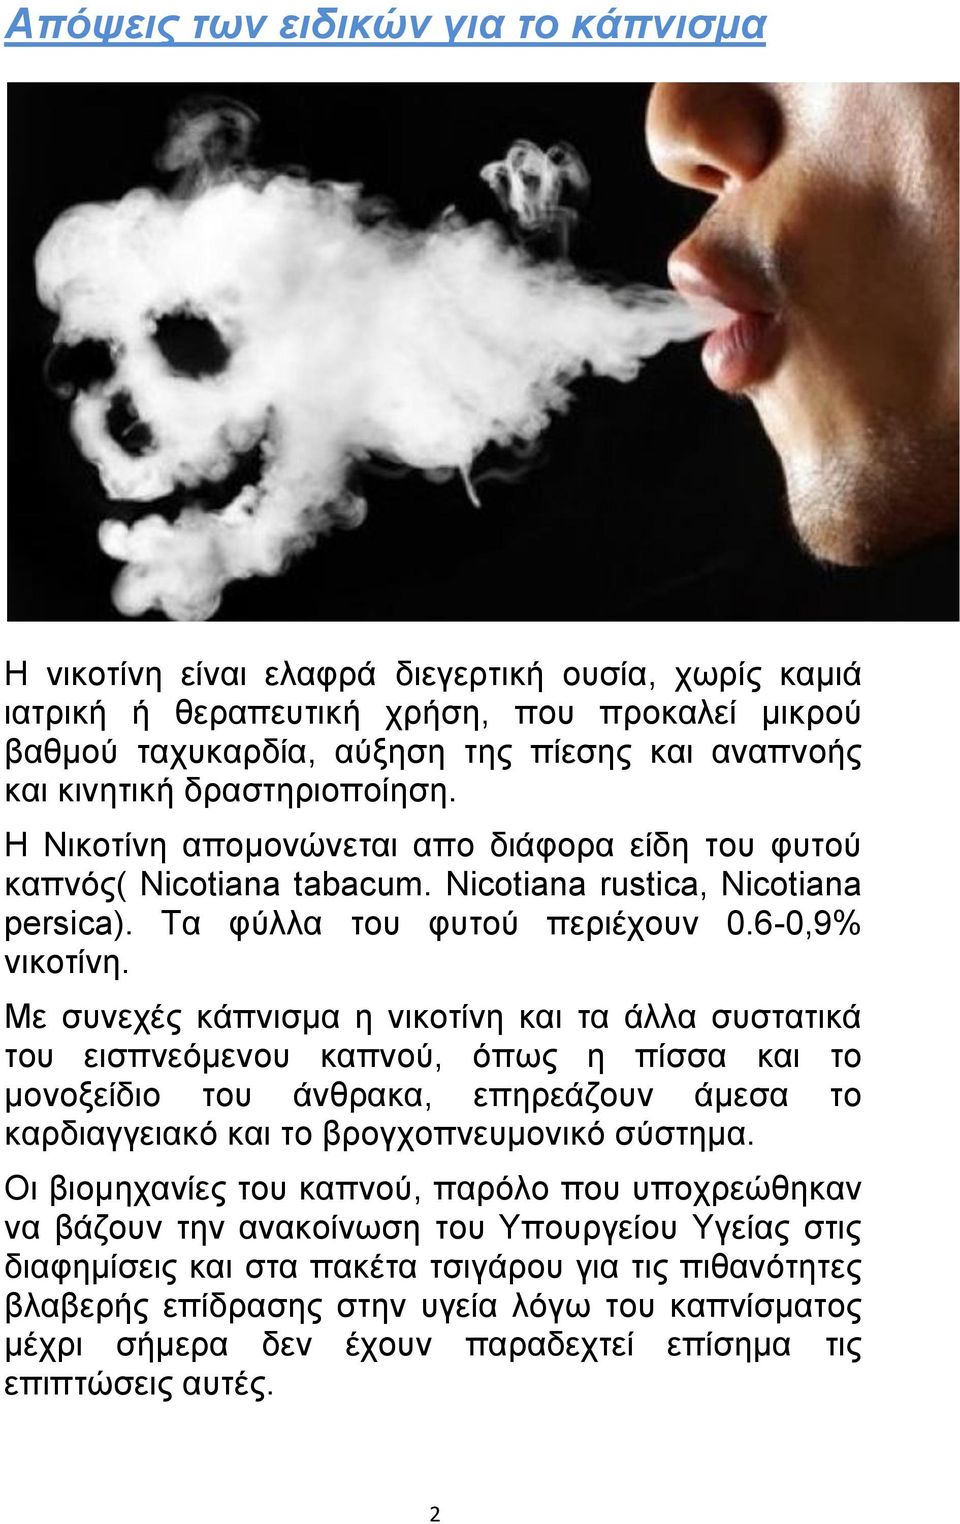 Με συνεχές κάπνισμα η νικοτίνη και τα άλλα συστατικά του εισπνεόμενου καπνού, όπως η πίσσα και το μονοξείδιο του άνθρακα, επηρεάζουν άμεσα το καρδιαγγειακό και το βρογχοπνευμονικό σύστημα.